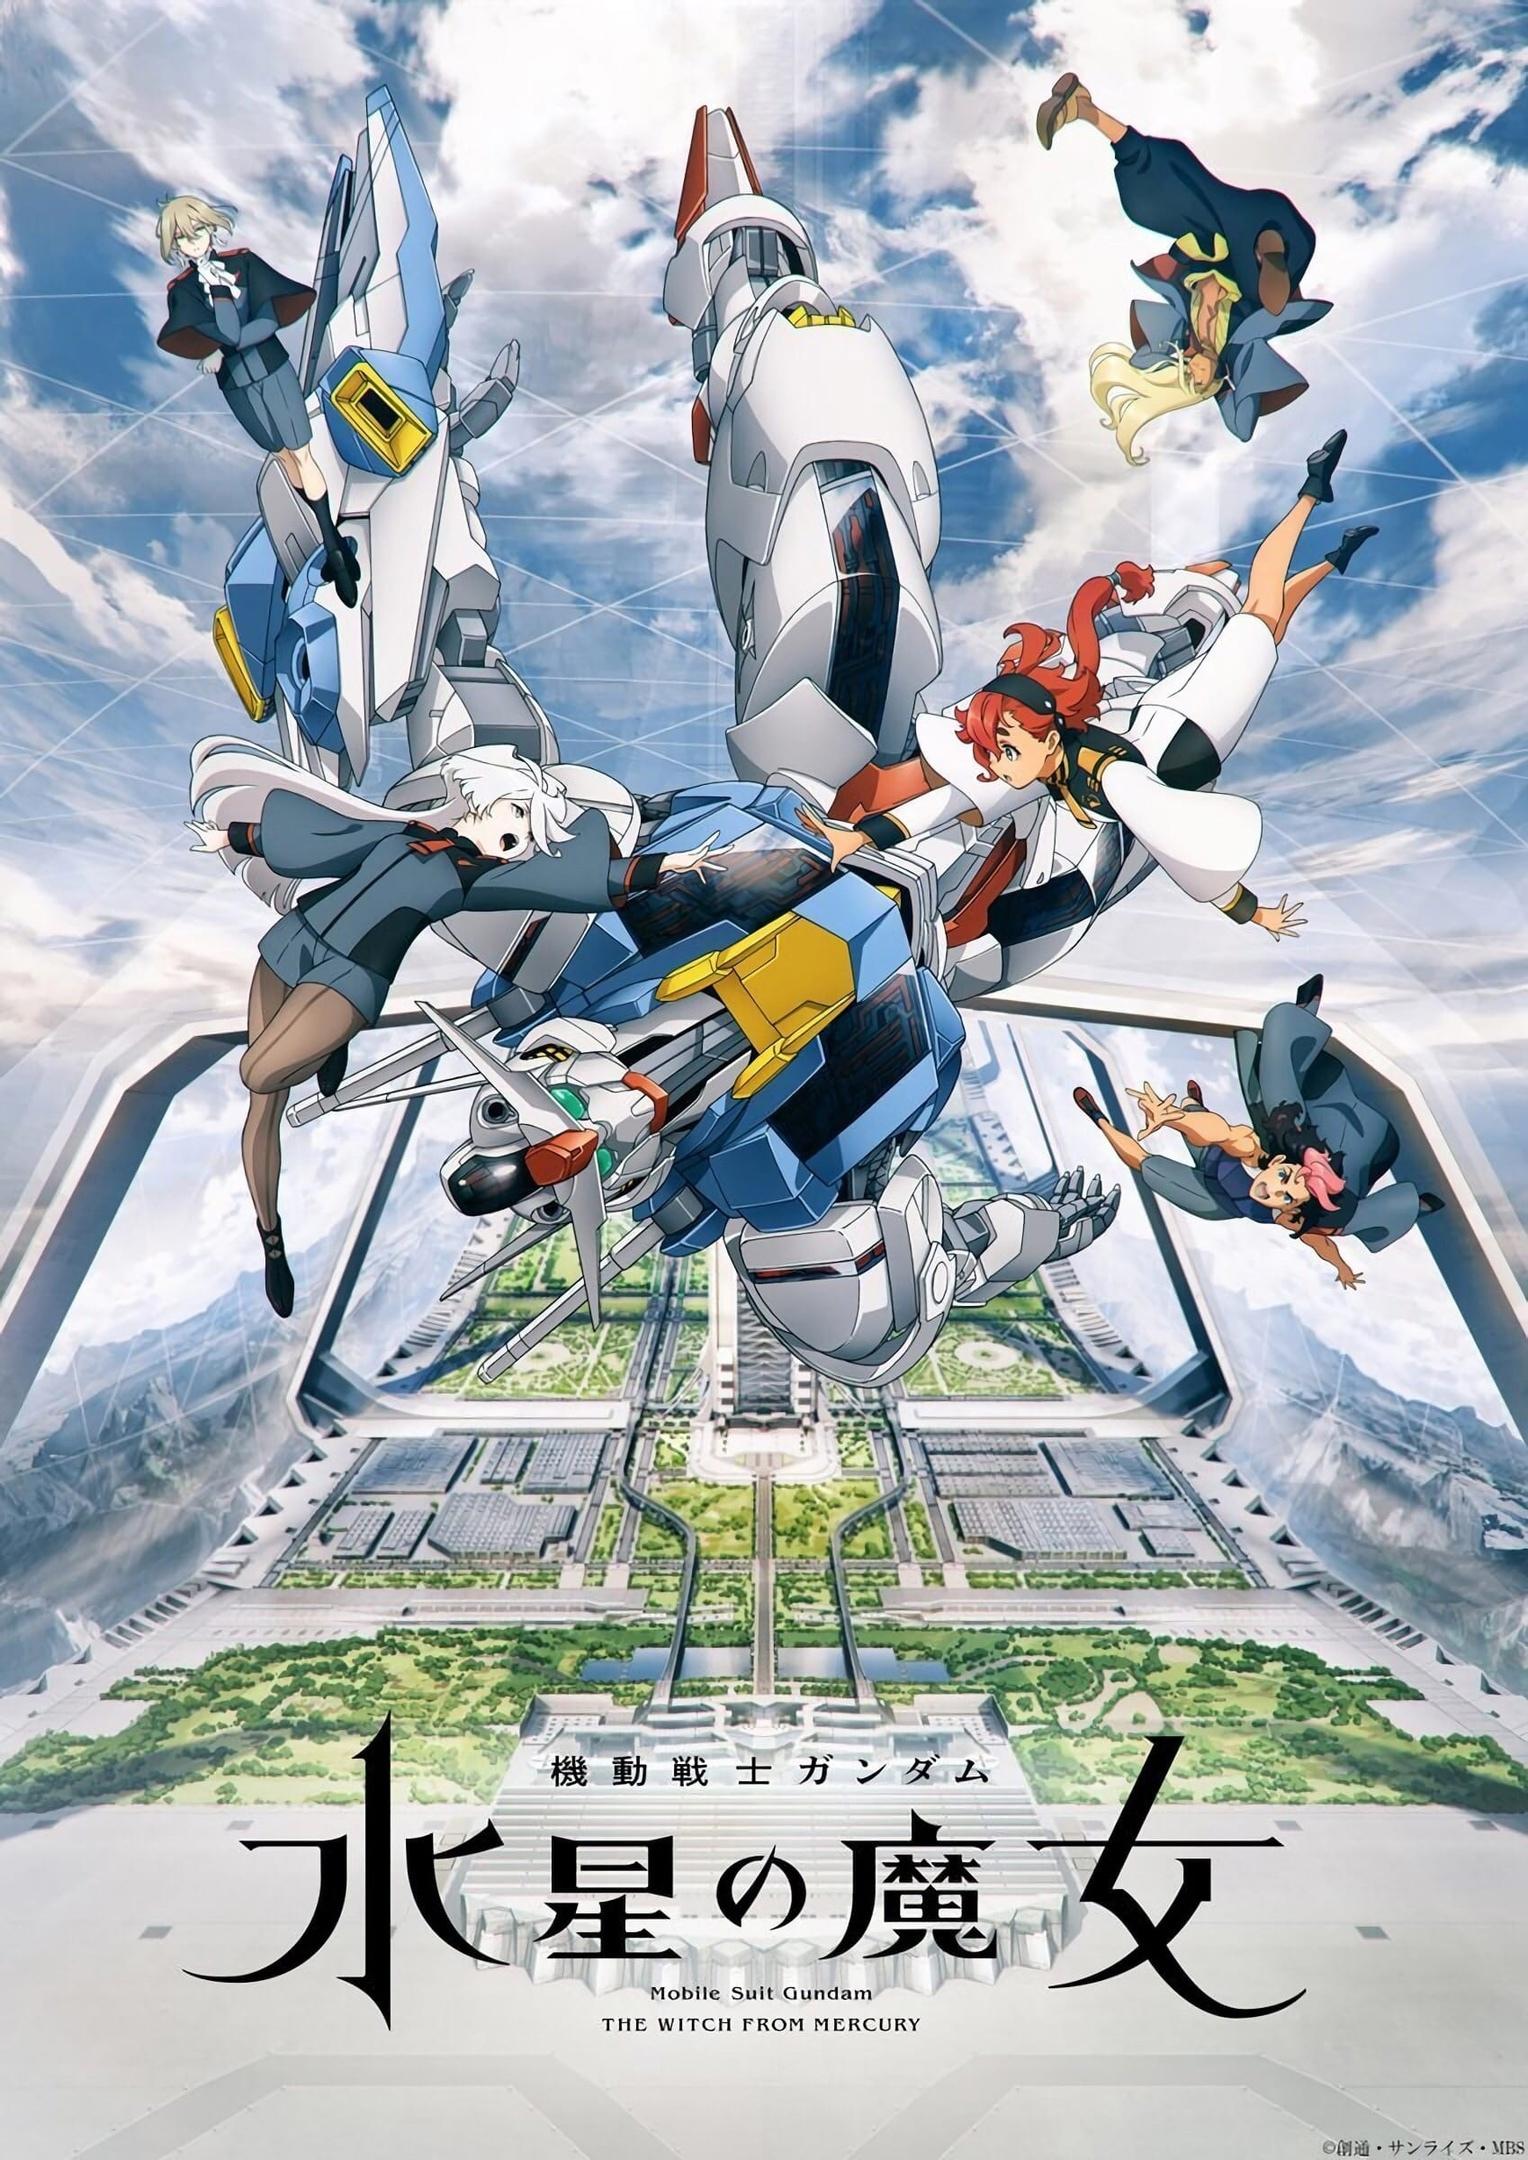 Постер фильма Мобильный воин Гандам: Ведьма с Меркурия | Mobile Suit Gundam: The Witch from Mercury